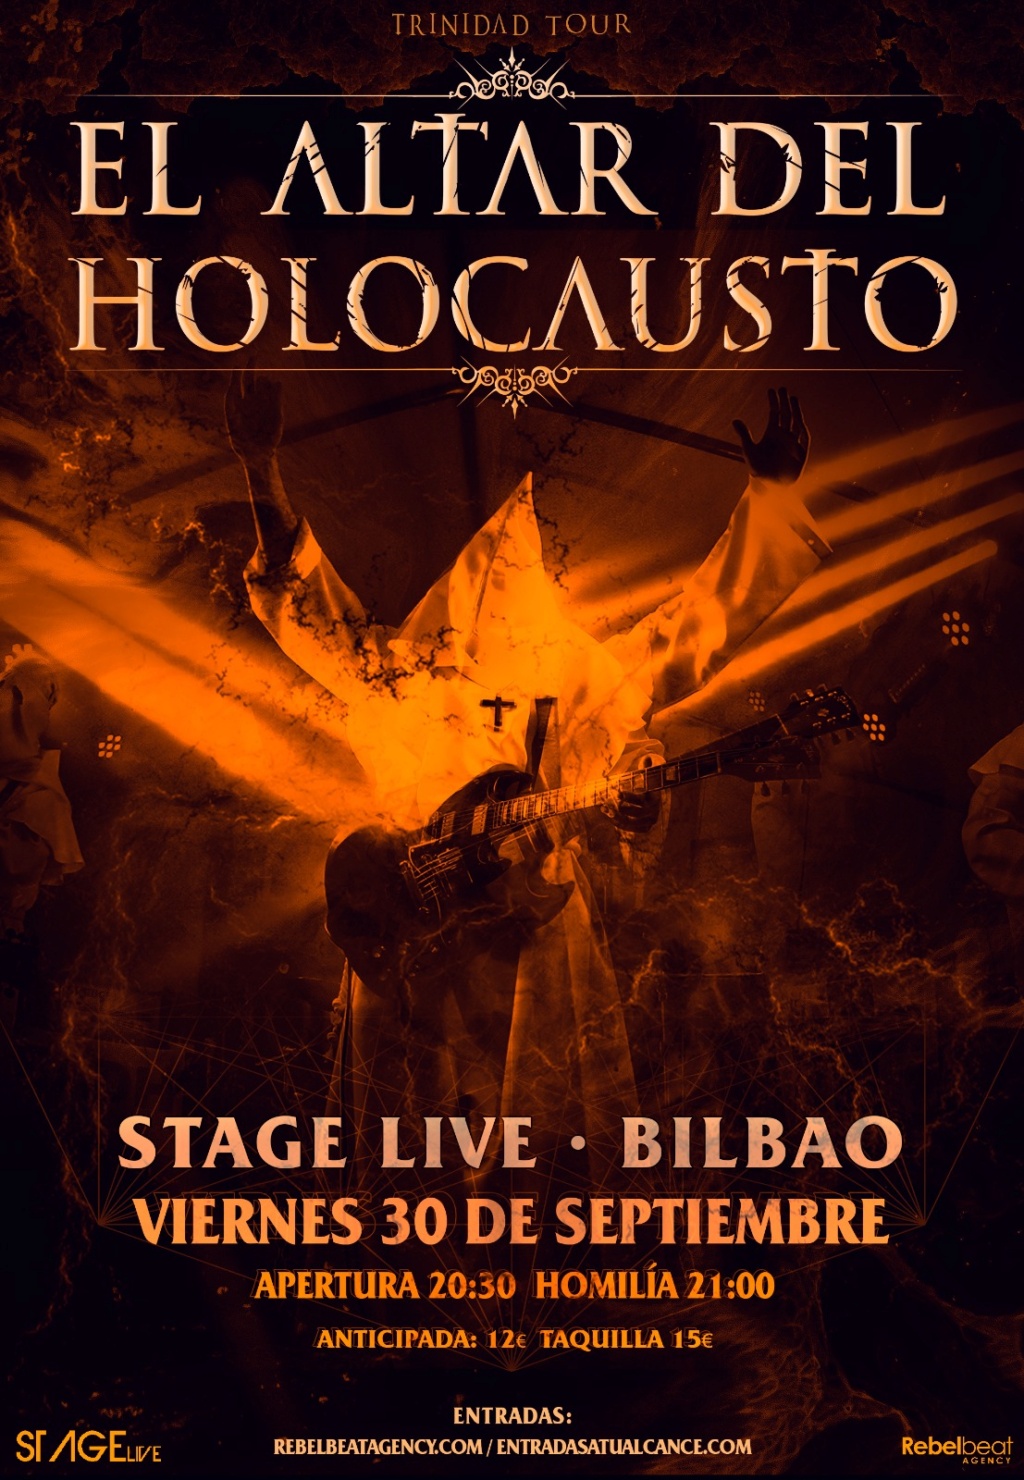 El Altar Del Holocausto: ¡¡¡Nuevas fechas para presentar ✞ T R I N I DAD !!!!! ( Villava 27 mayo - Zaragoza - 28 mayo) - Página 18 Img-2023